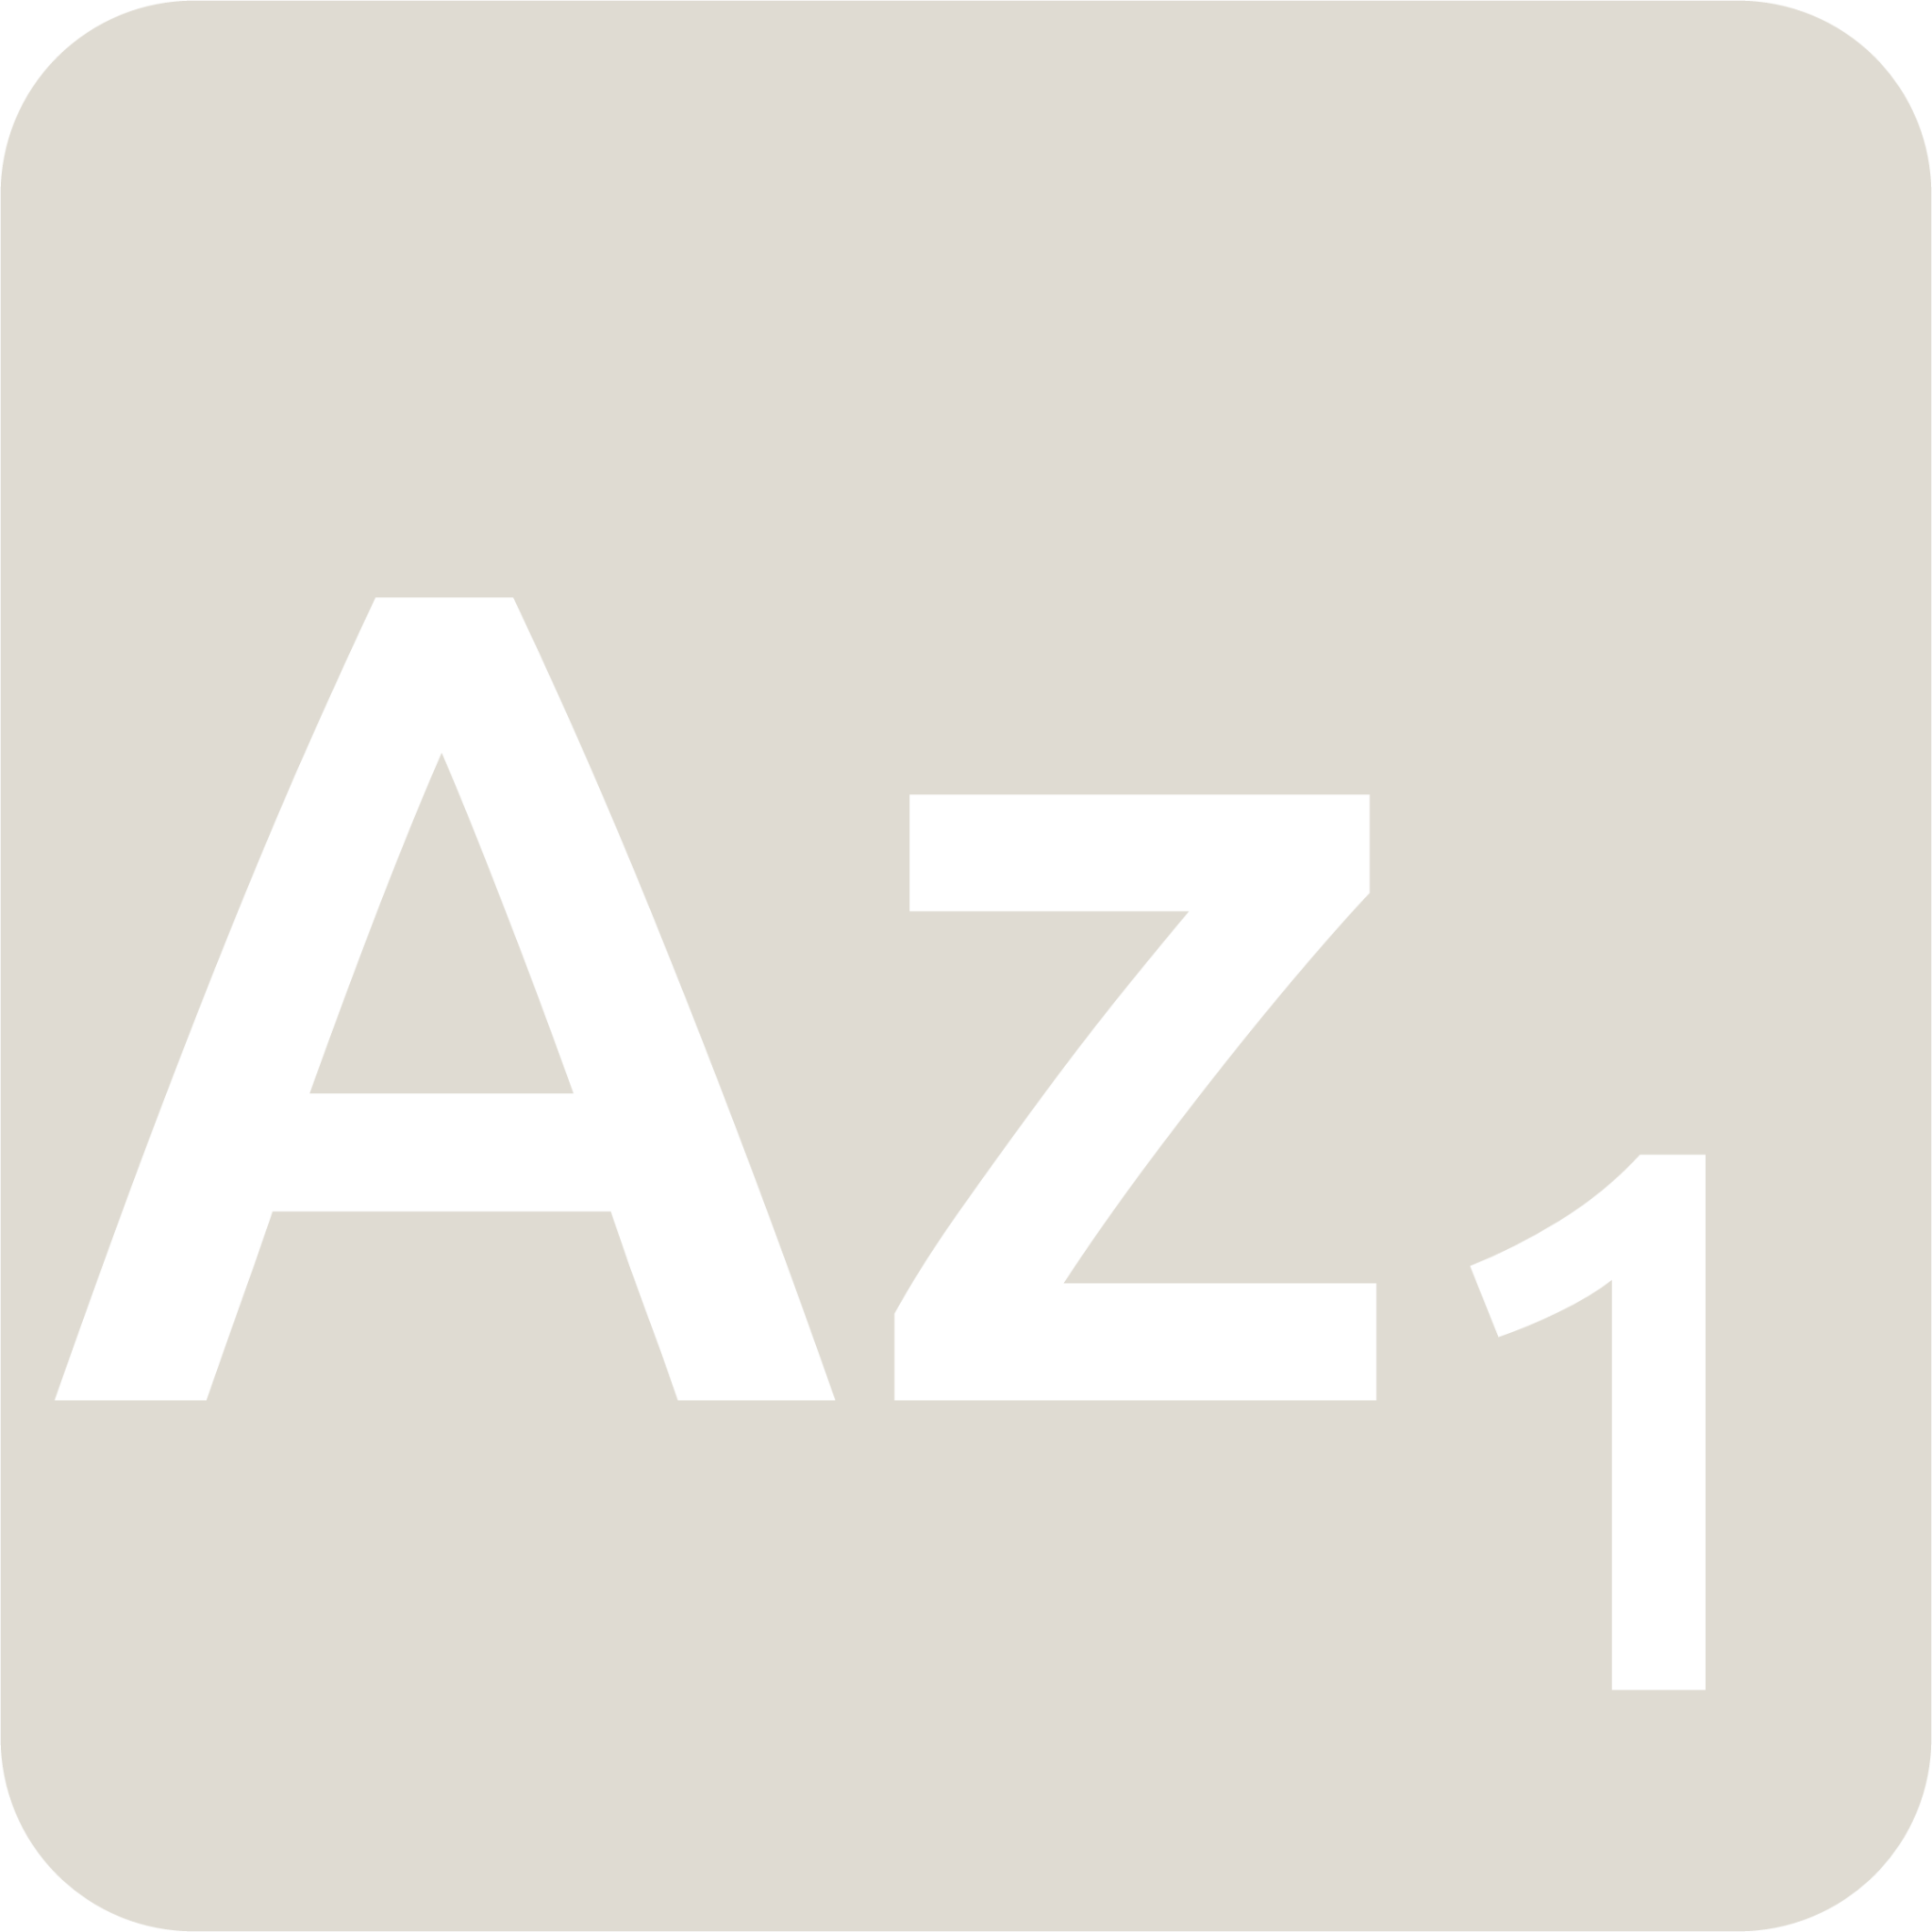 indicator keyboard Az 1 icon